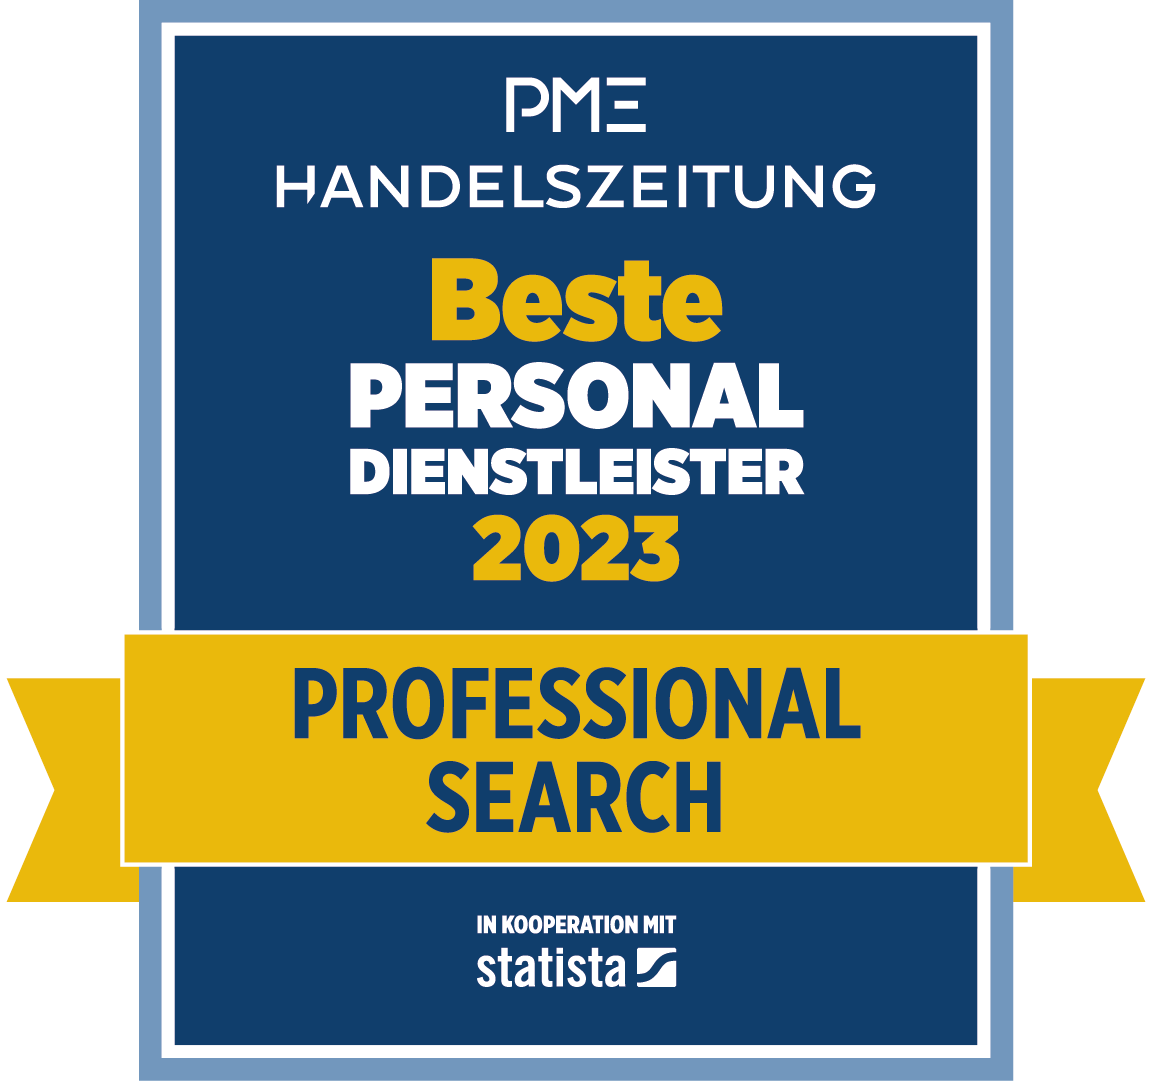 Beste Personaldienstleister 2023 - Professional Search